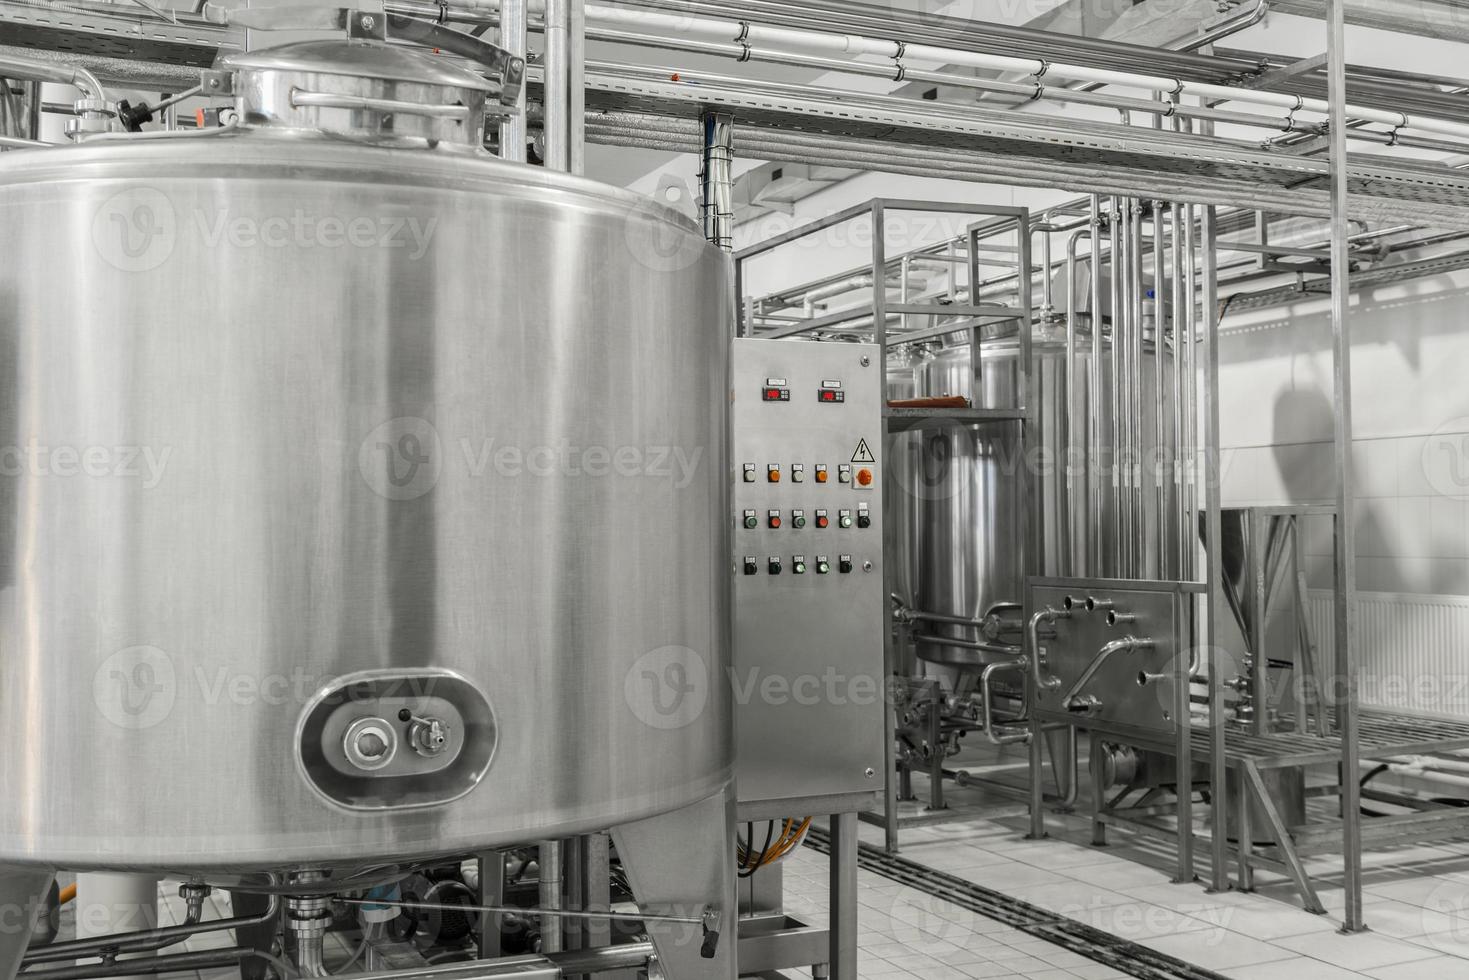 elektronisch bedieningspaneel en tank in een melkfabriek. apparatuur in de zuivelfabriek foto